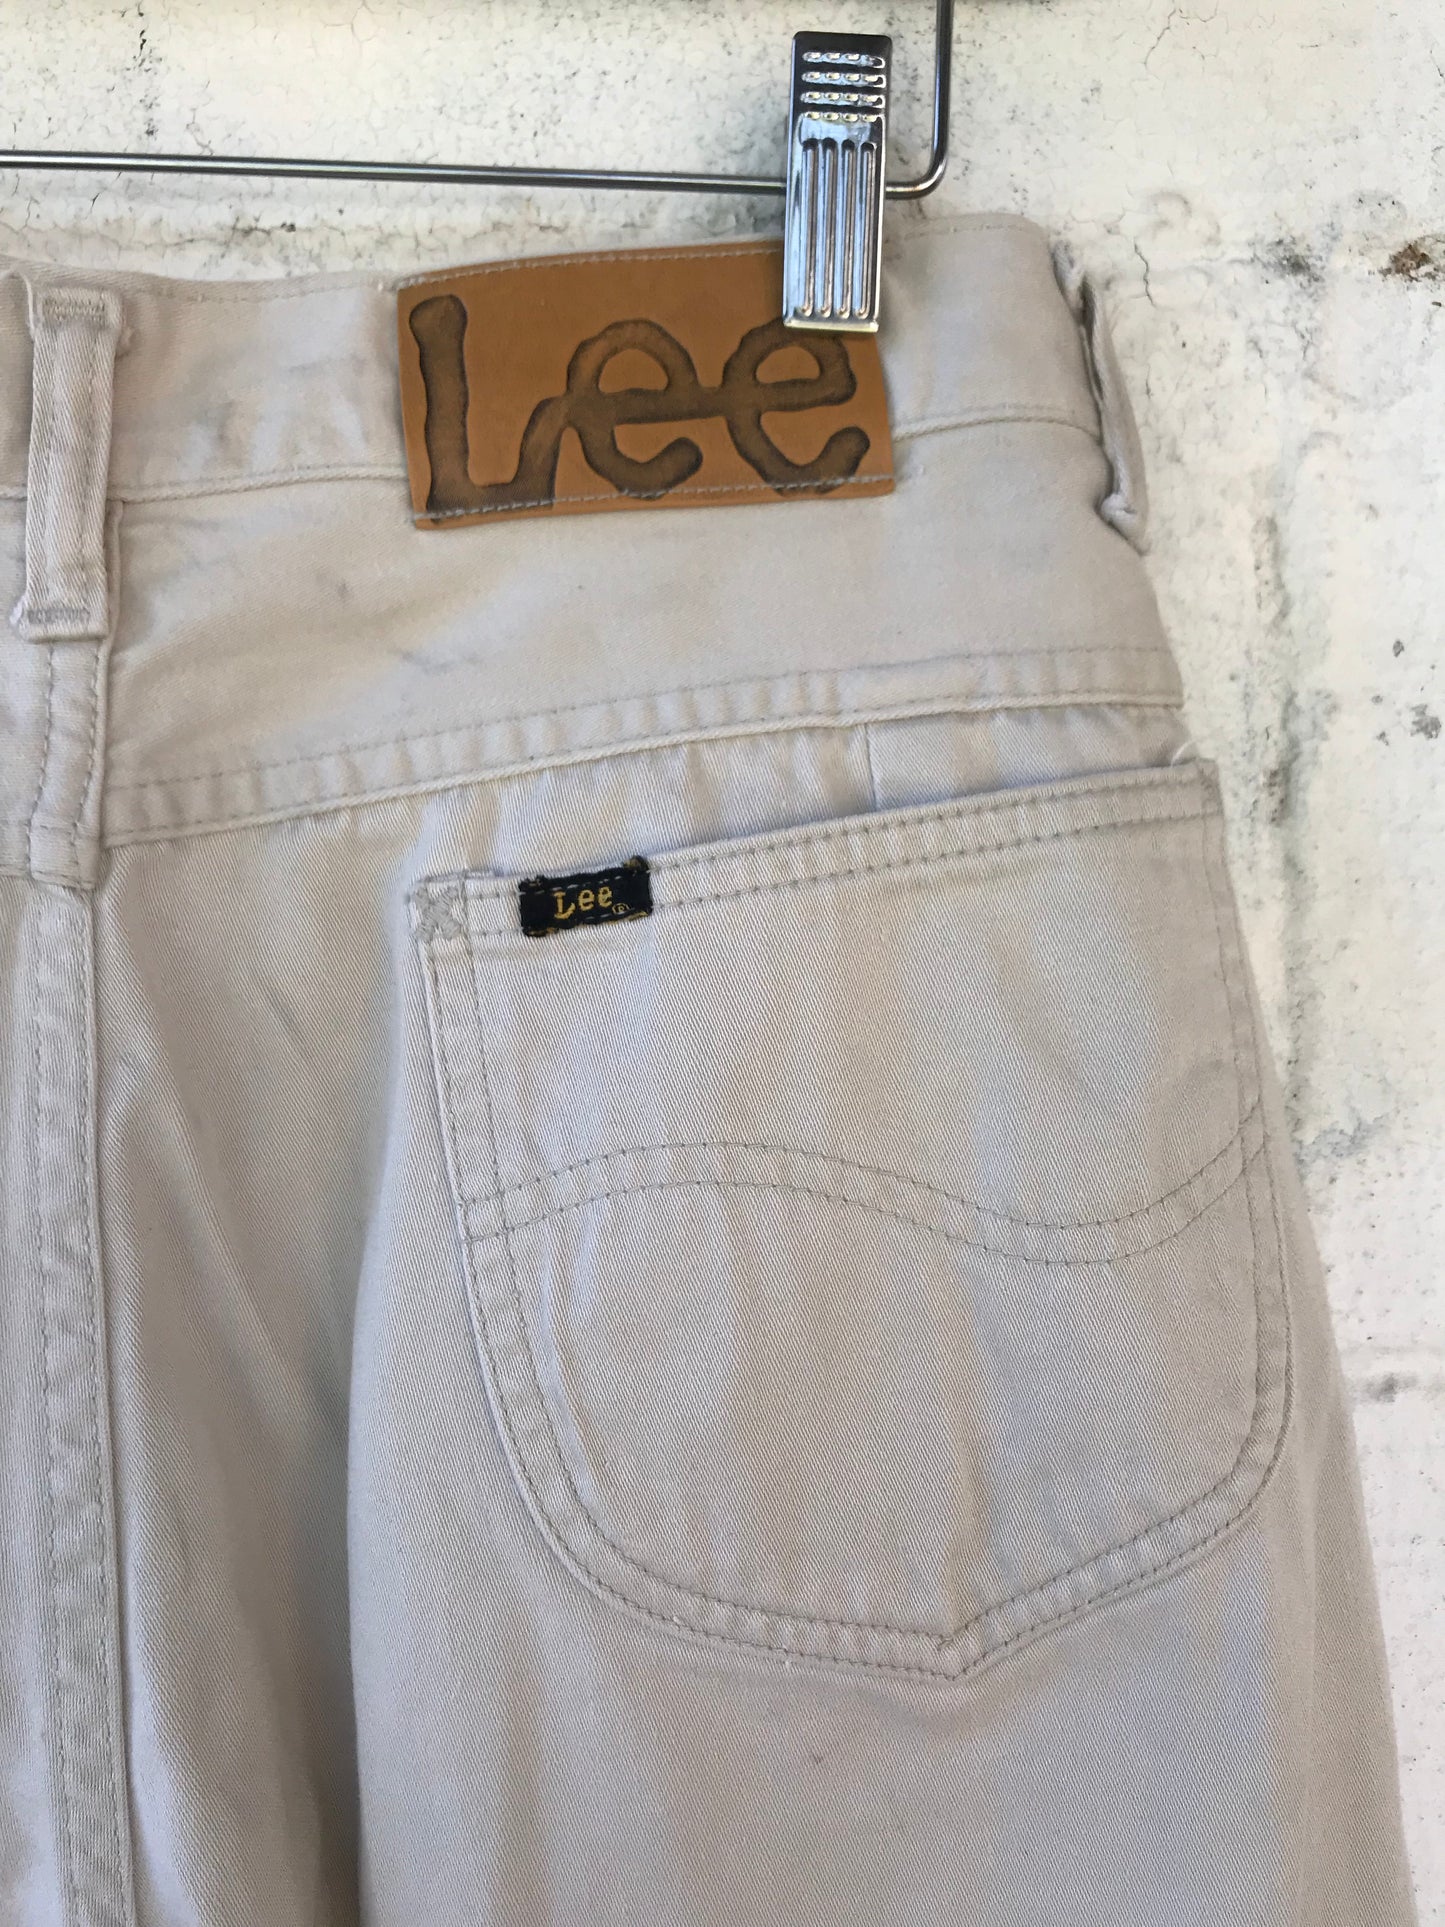 1960s Ladies Lee Westerner Pants size 28